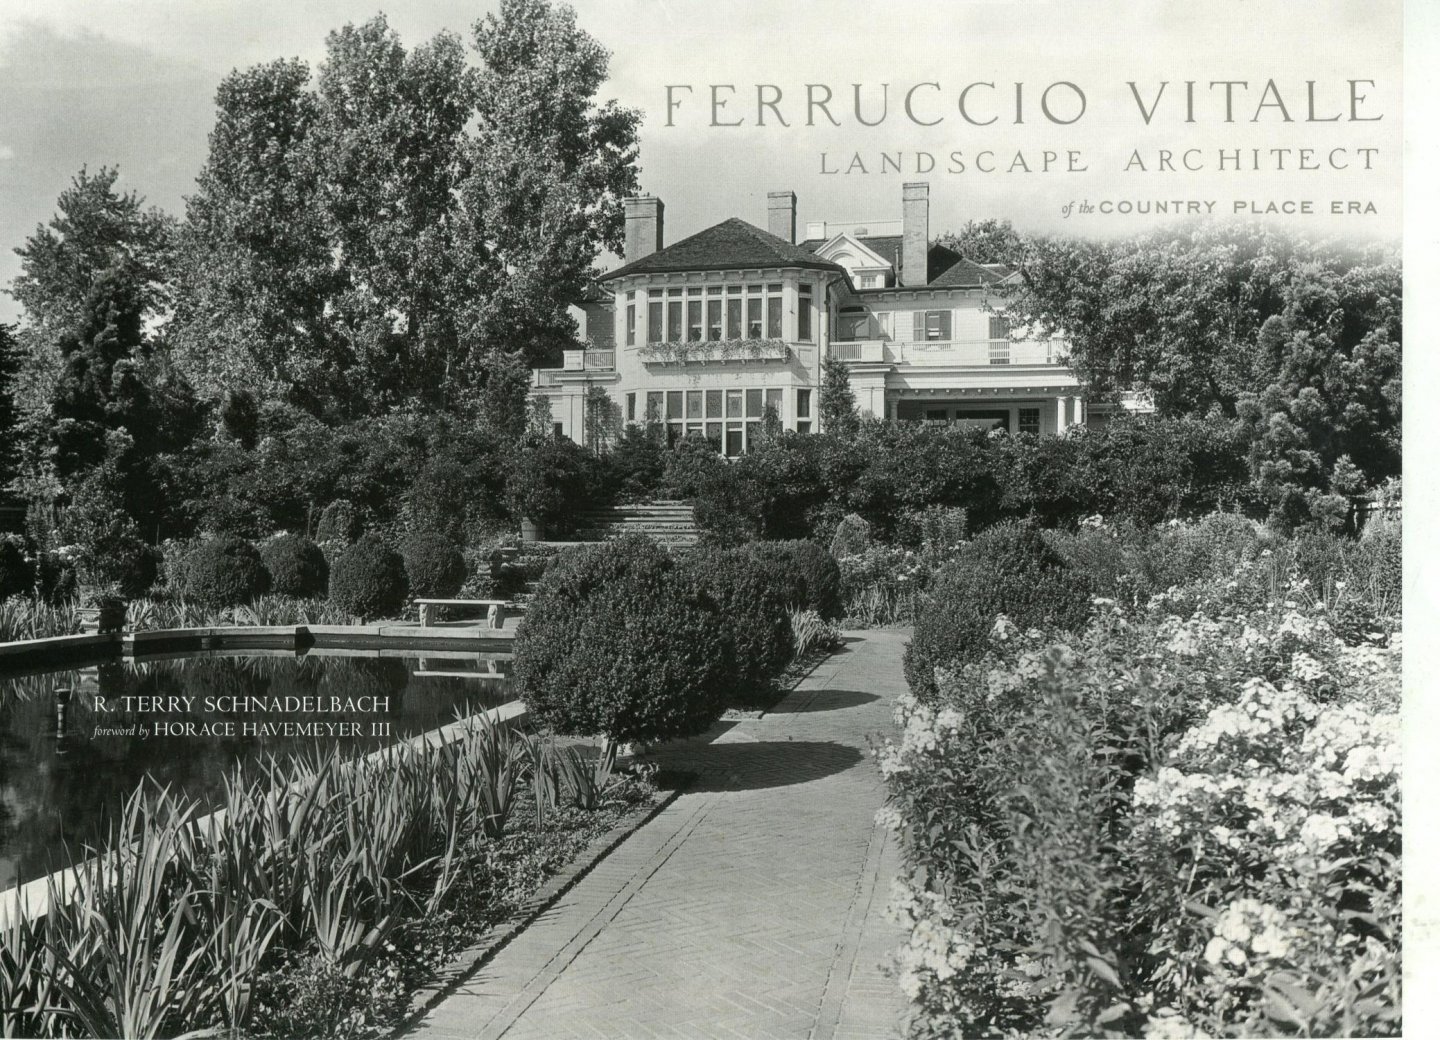 Schnadelbach, R. Terry - Ferruccio Vitale - Landscape Architect of the Country Place Era